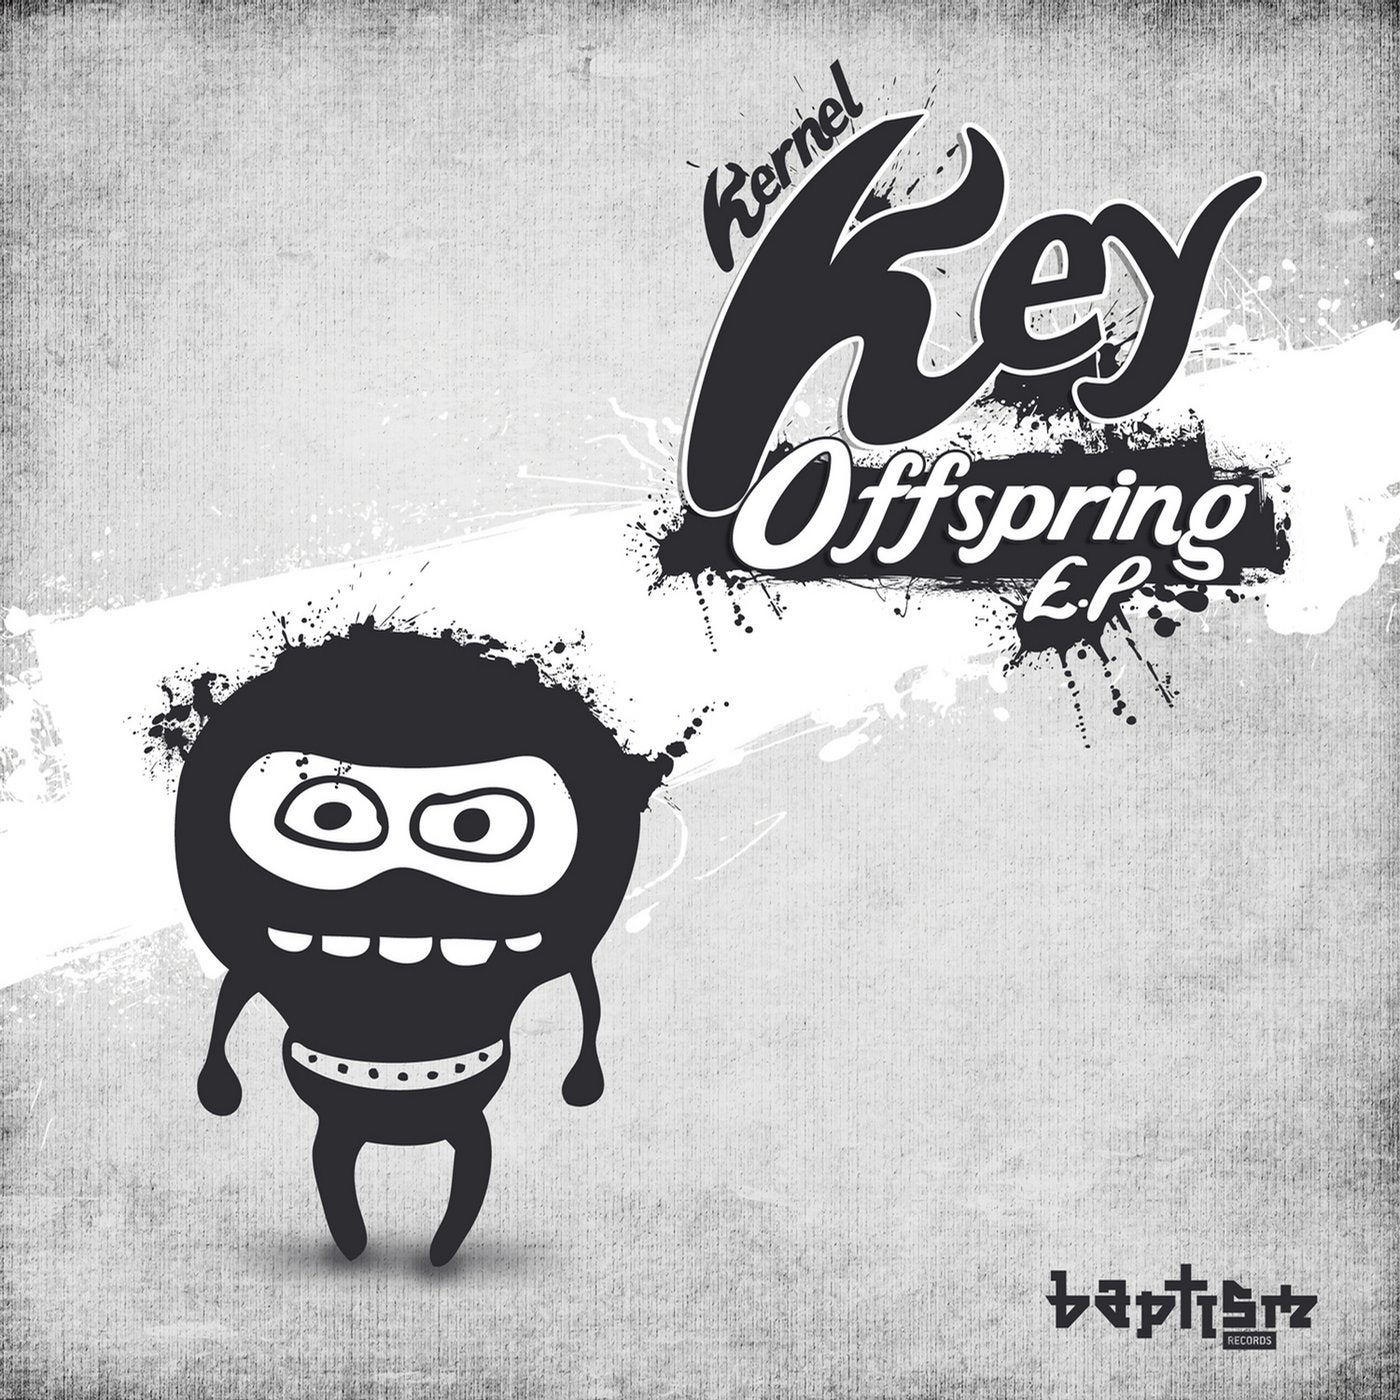 Offspring EP